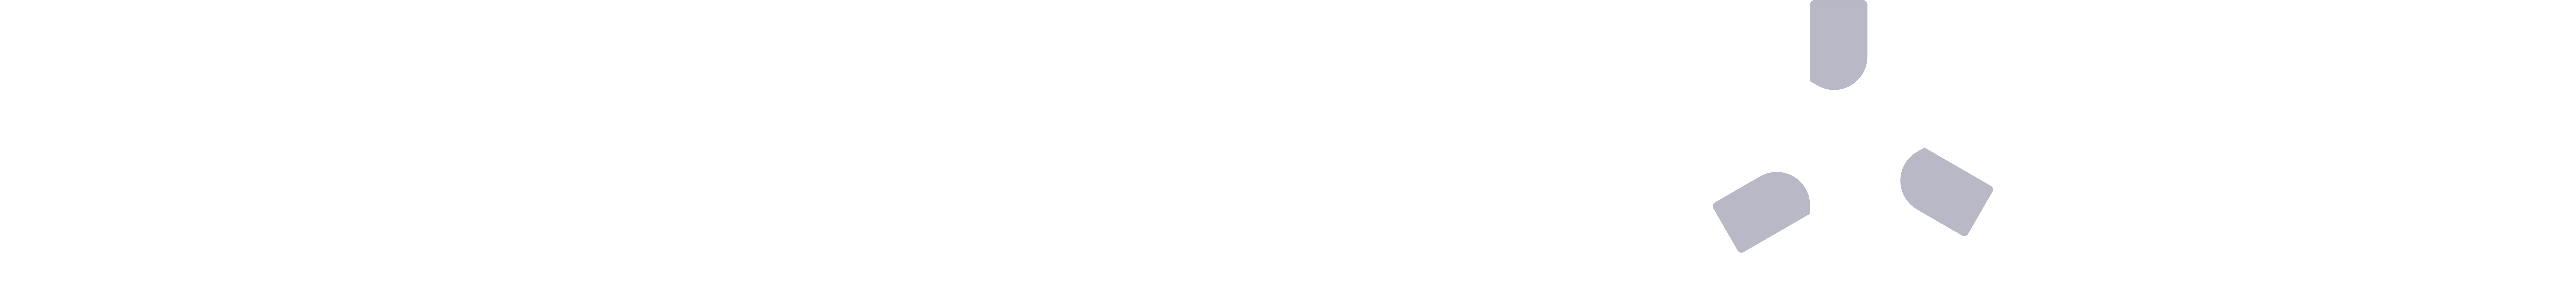 横板logo1_1.png